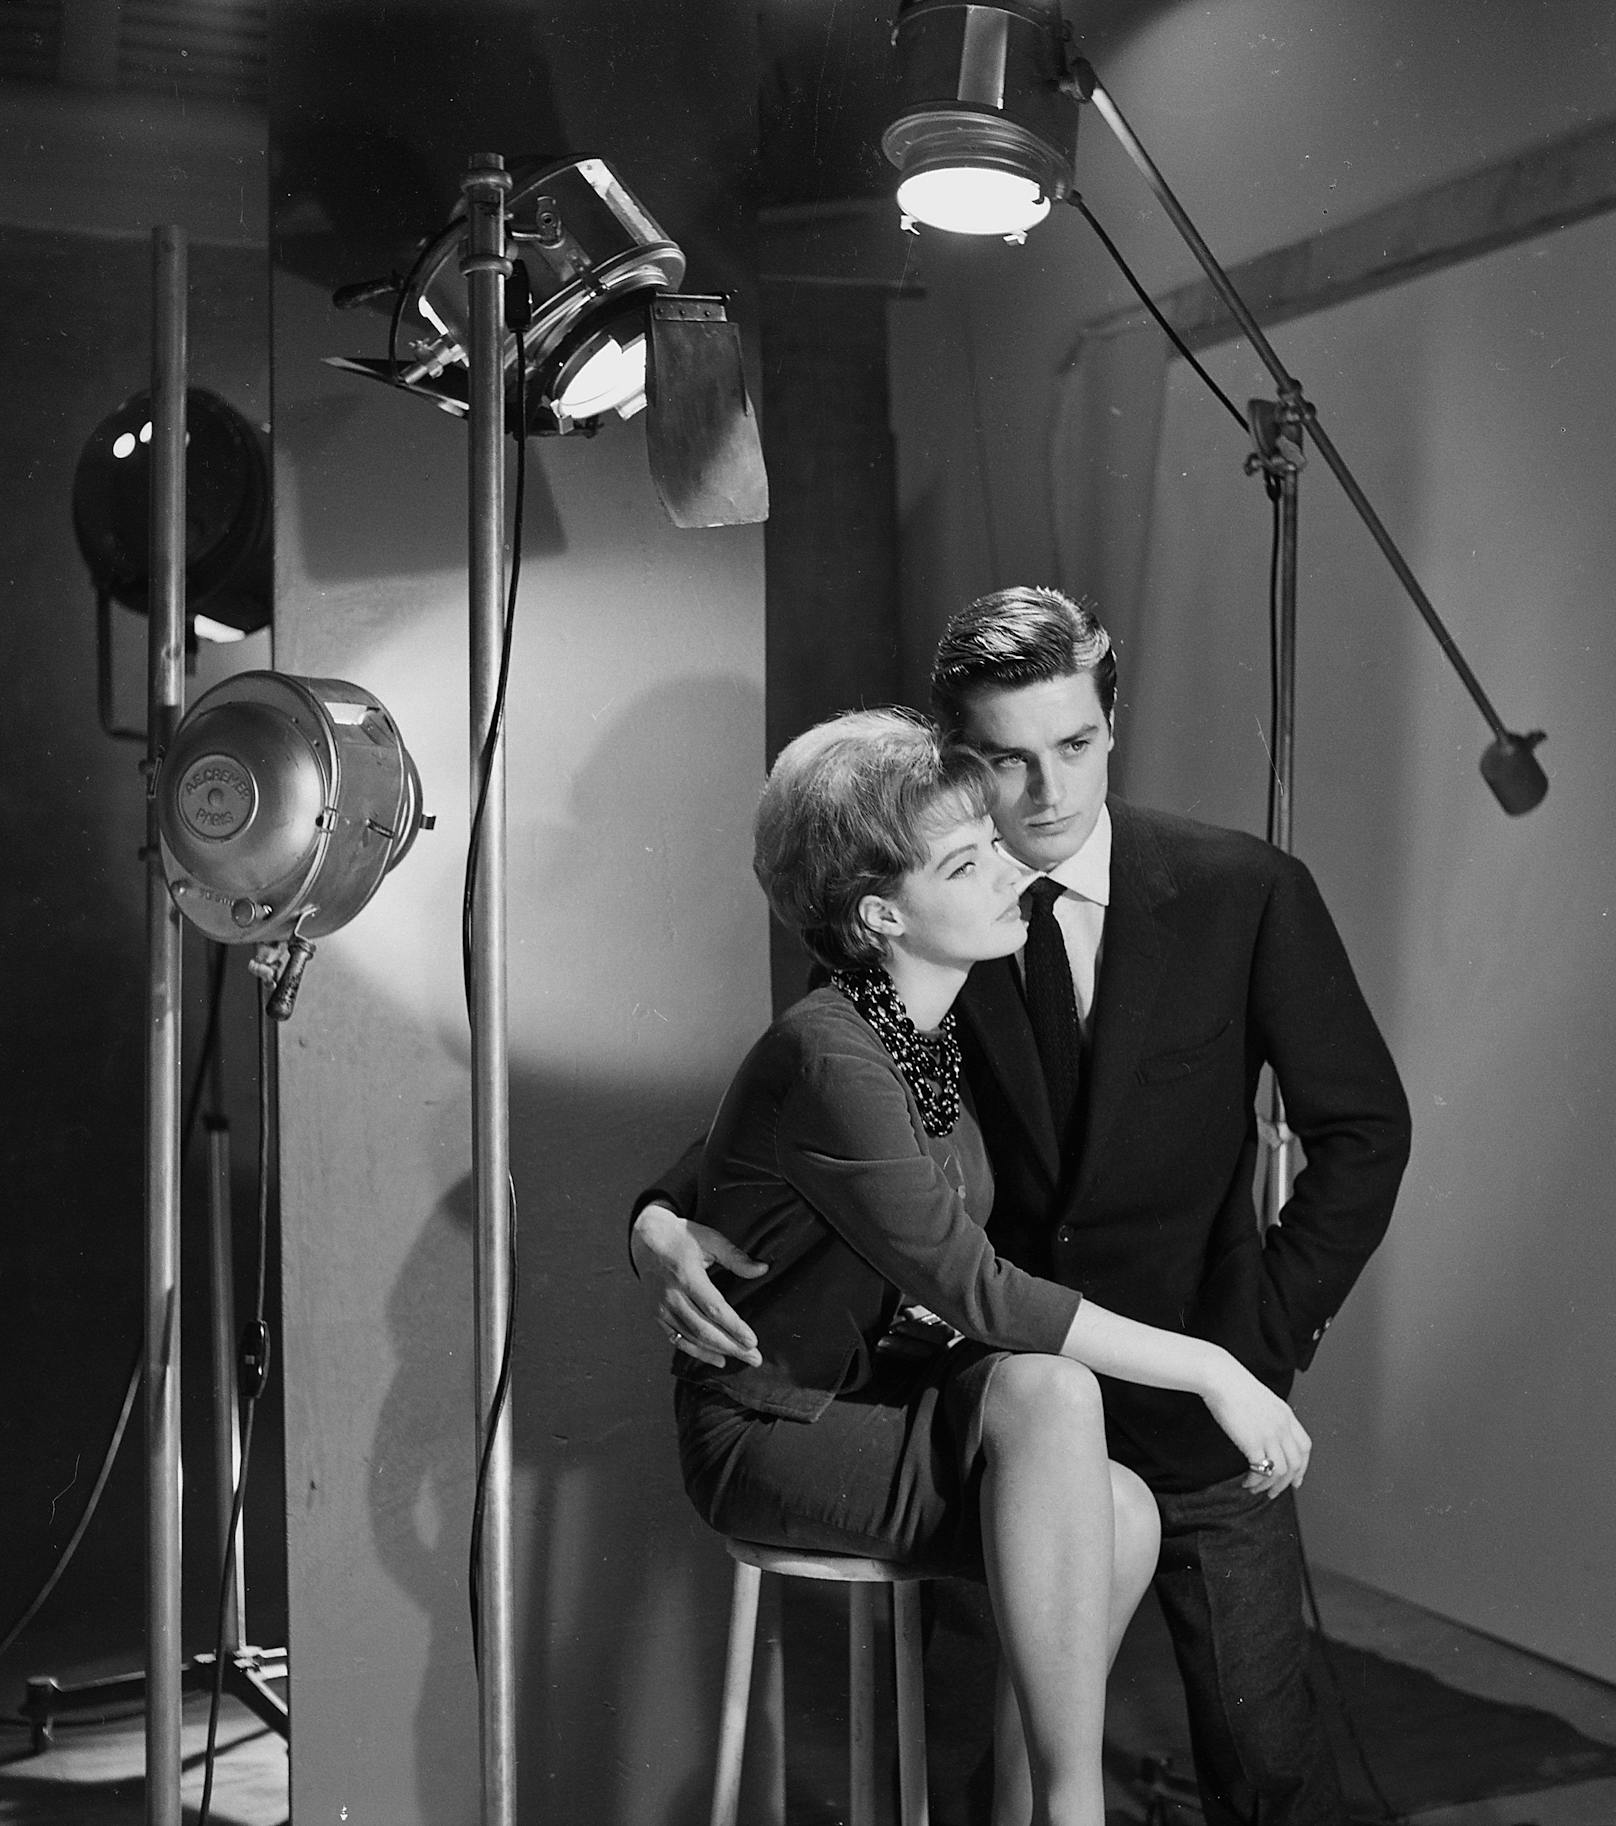 Schneider und Delon waren eines der glamourösesten Paare ihrer Zeit und wurden von Fans und der Presse gleichermaßen bewundert. Gemeinsam sorgten sie aber auch für etliche Schlagzeilen.